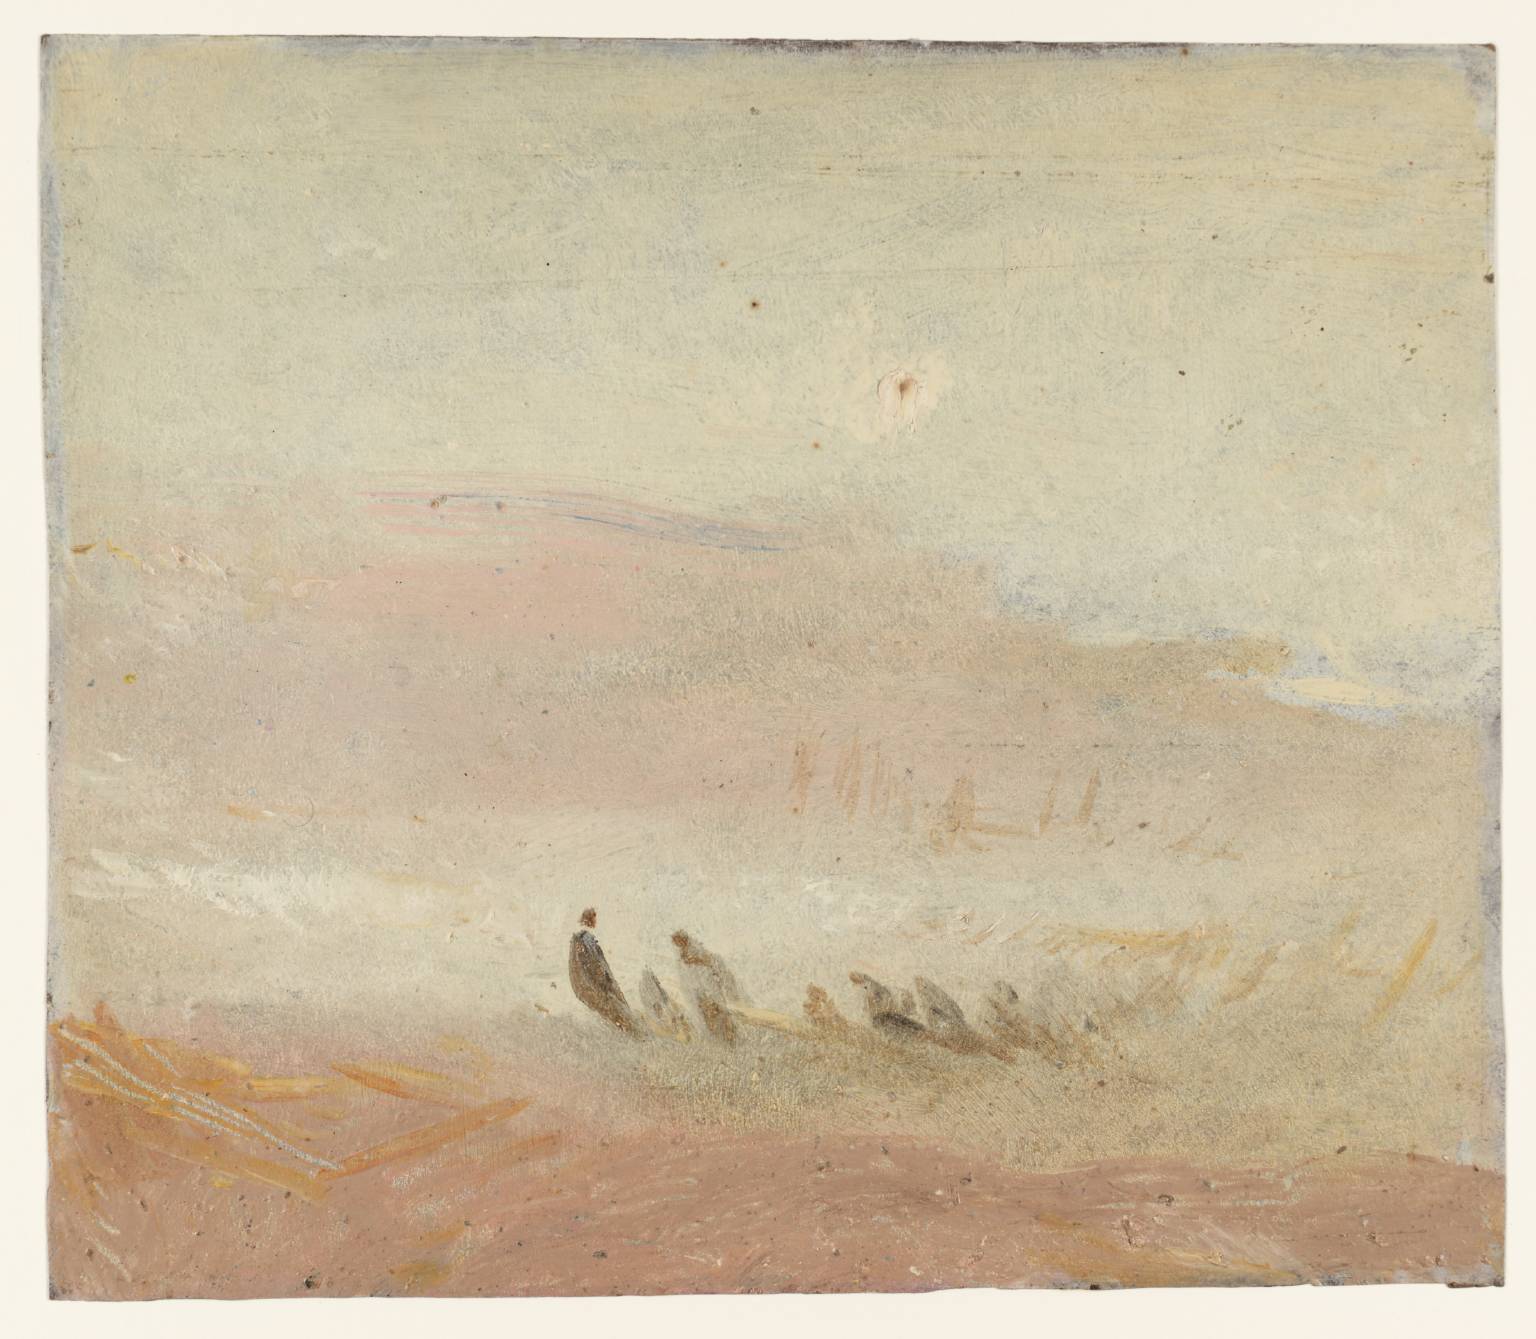 Figures on a Beach (1845).